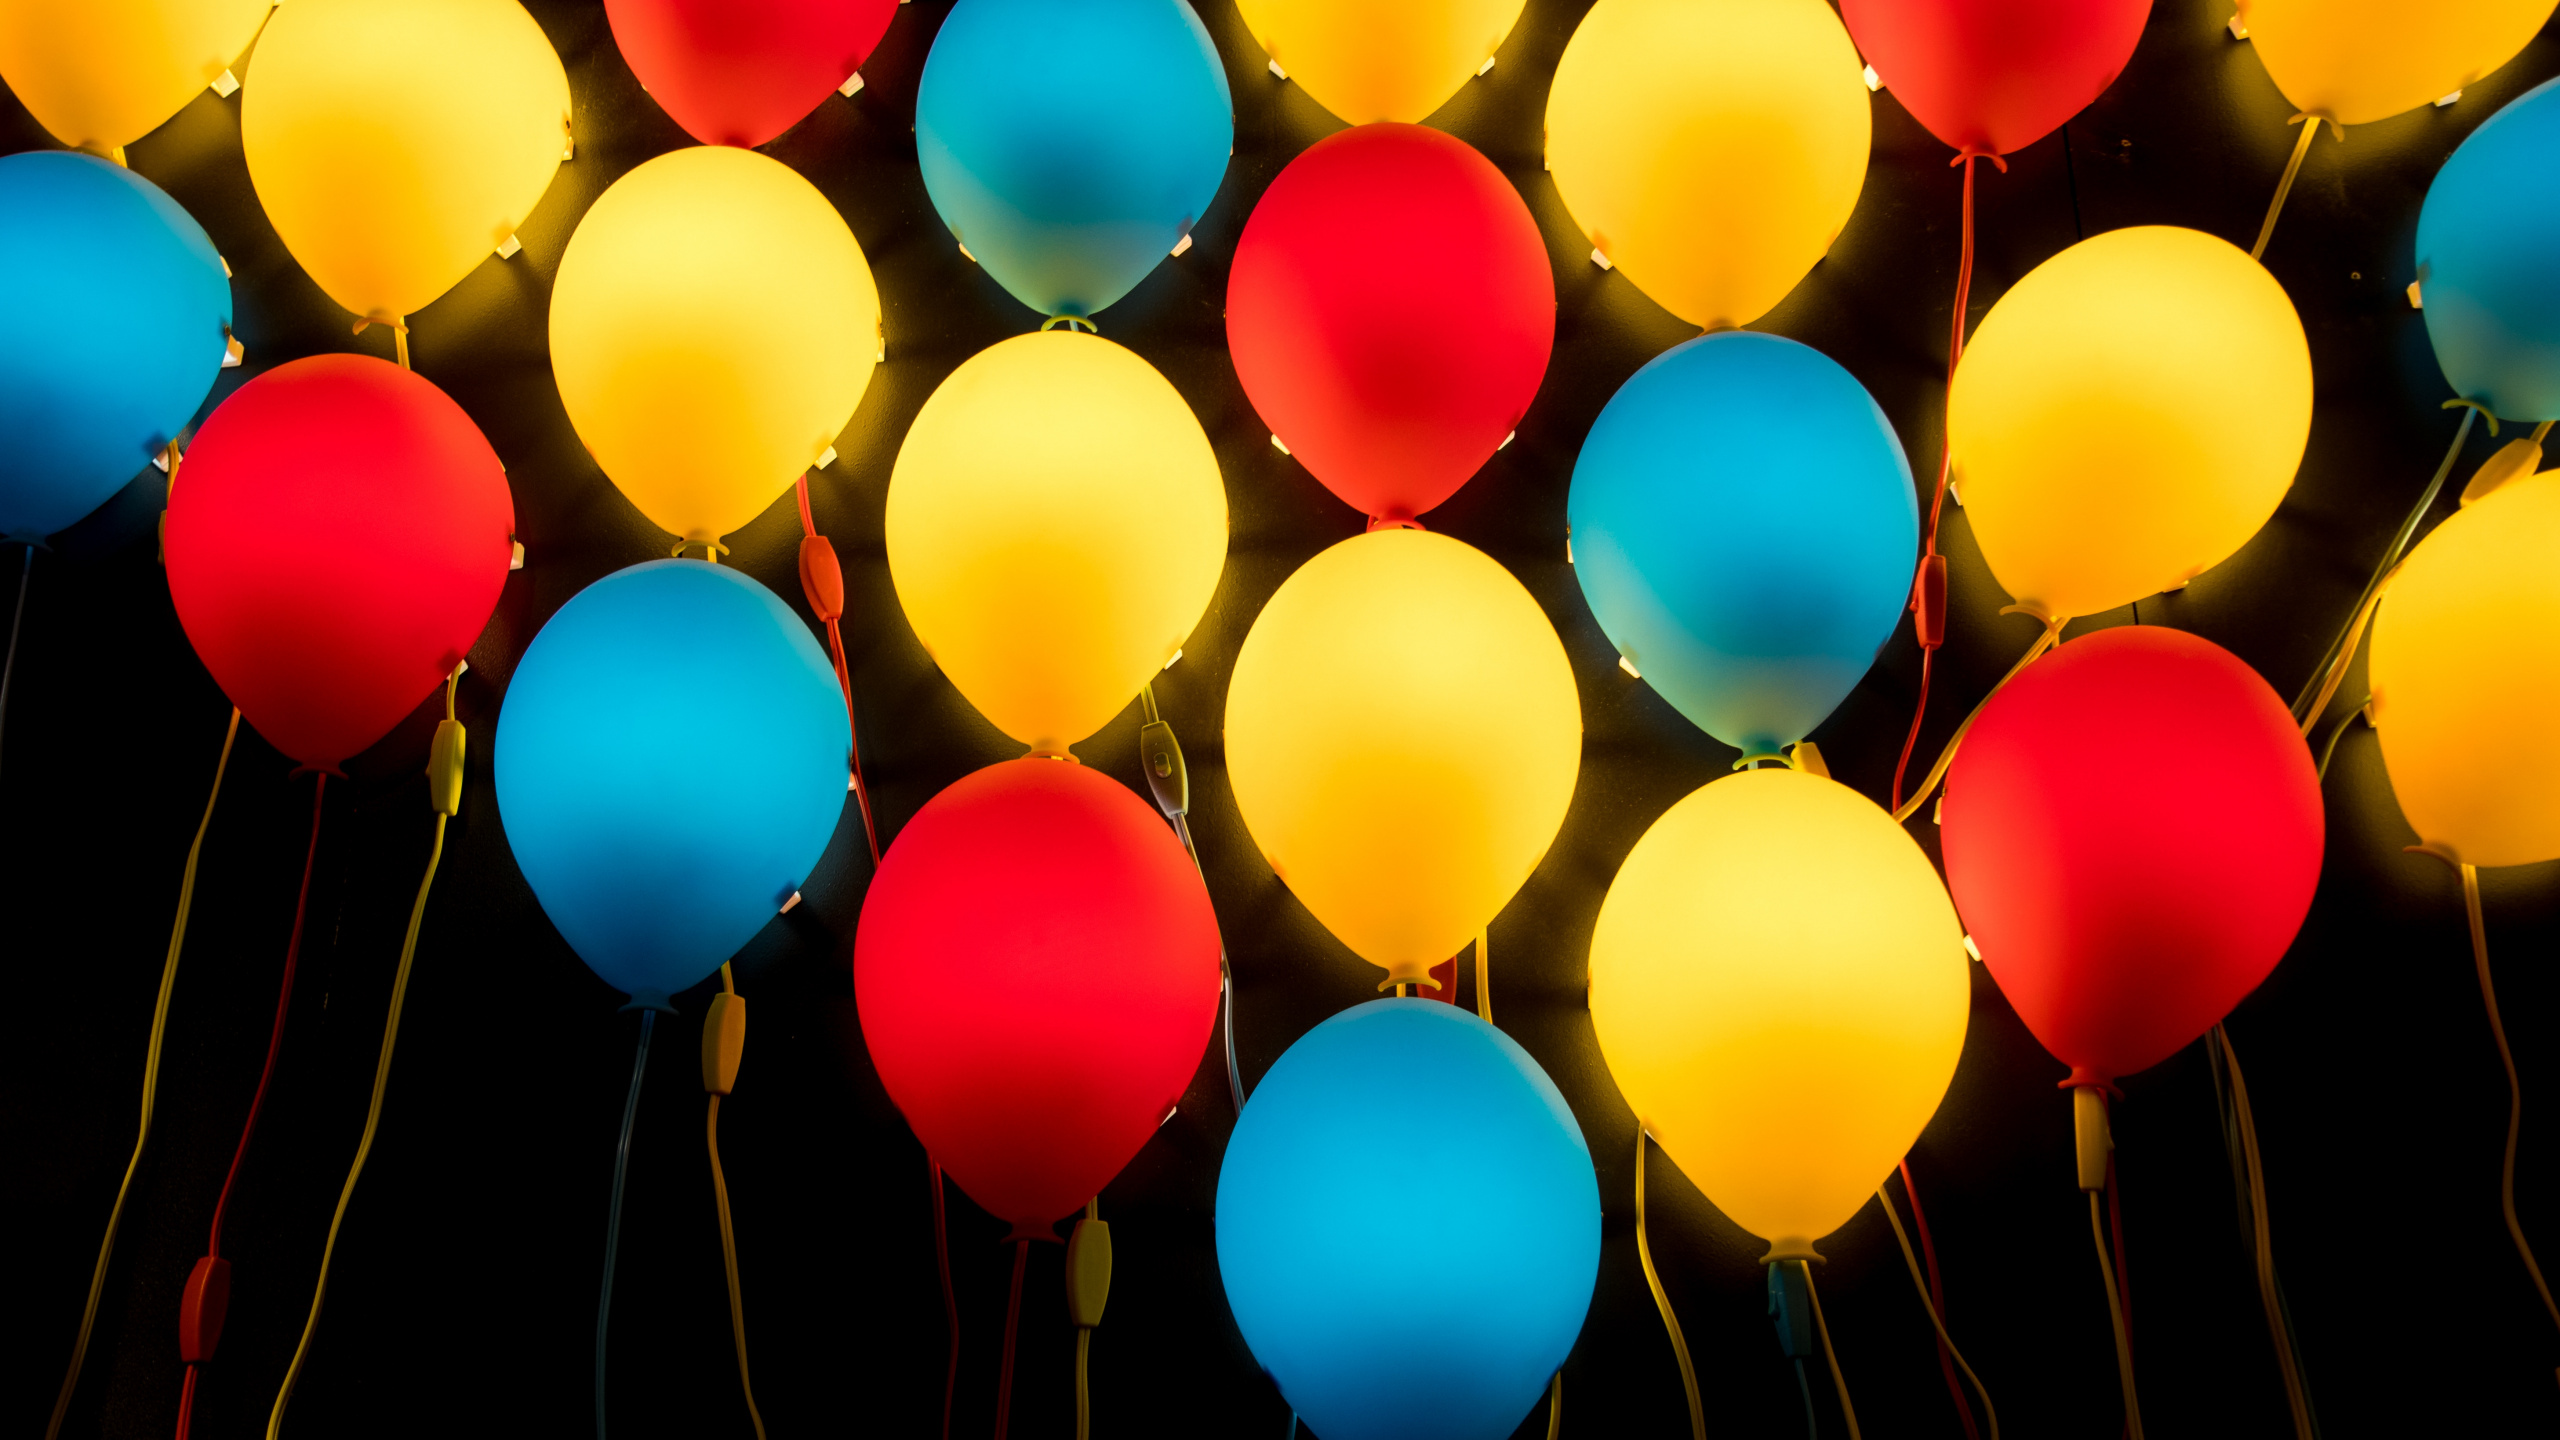 Gelbe Blaue Und Rote Luftballons. Wallpaper in 2560x1440 Resolution